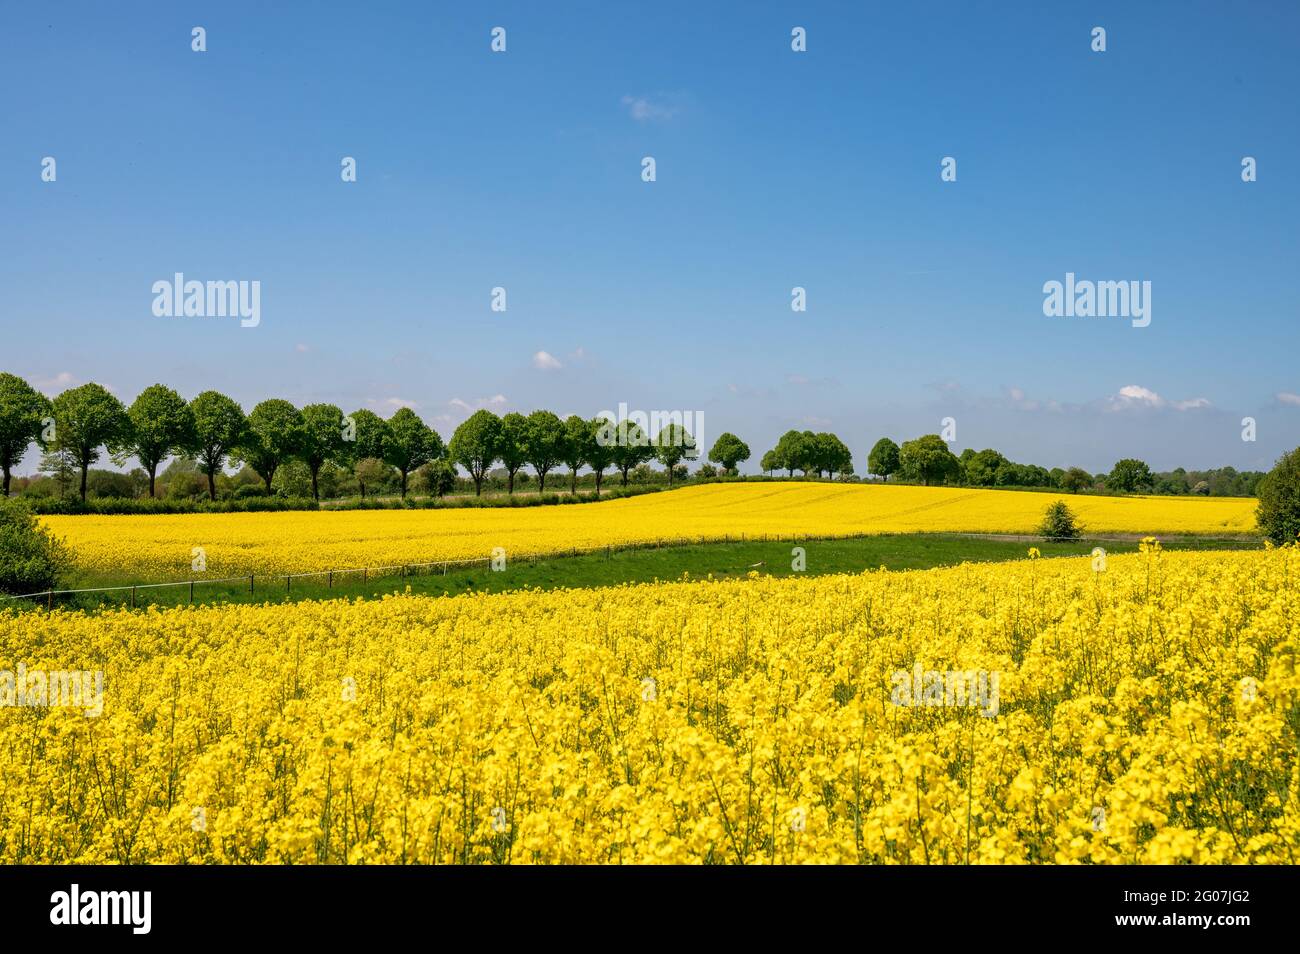 Kiel, Mai/Juni Gelbe Rapsfelder in voller Blüte, in Schleswig-Holstein im Mai/Juni prägen sie die Landschaft Stock Photo